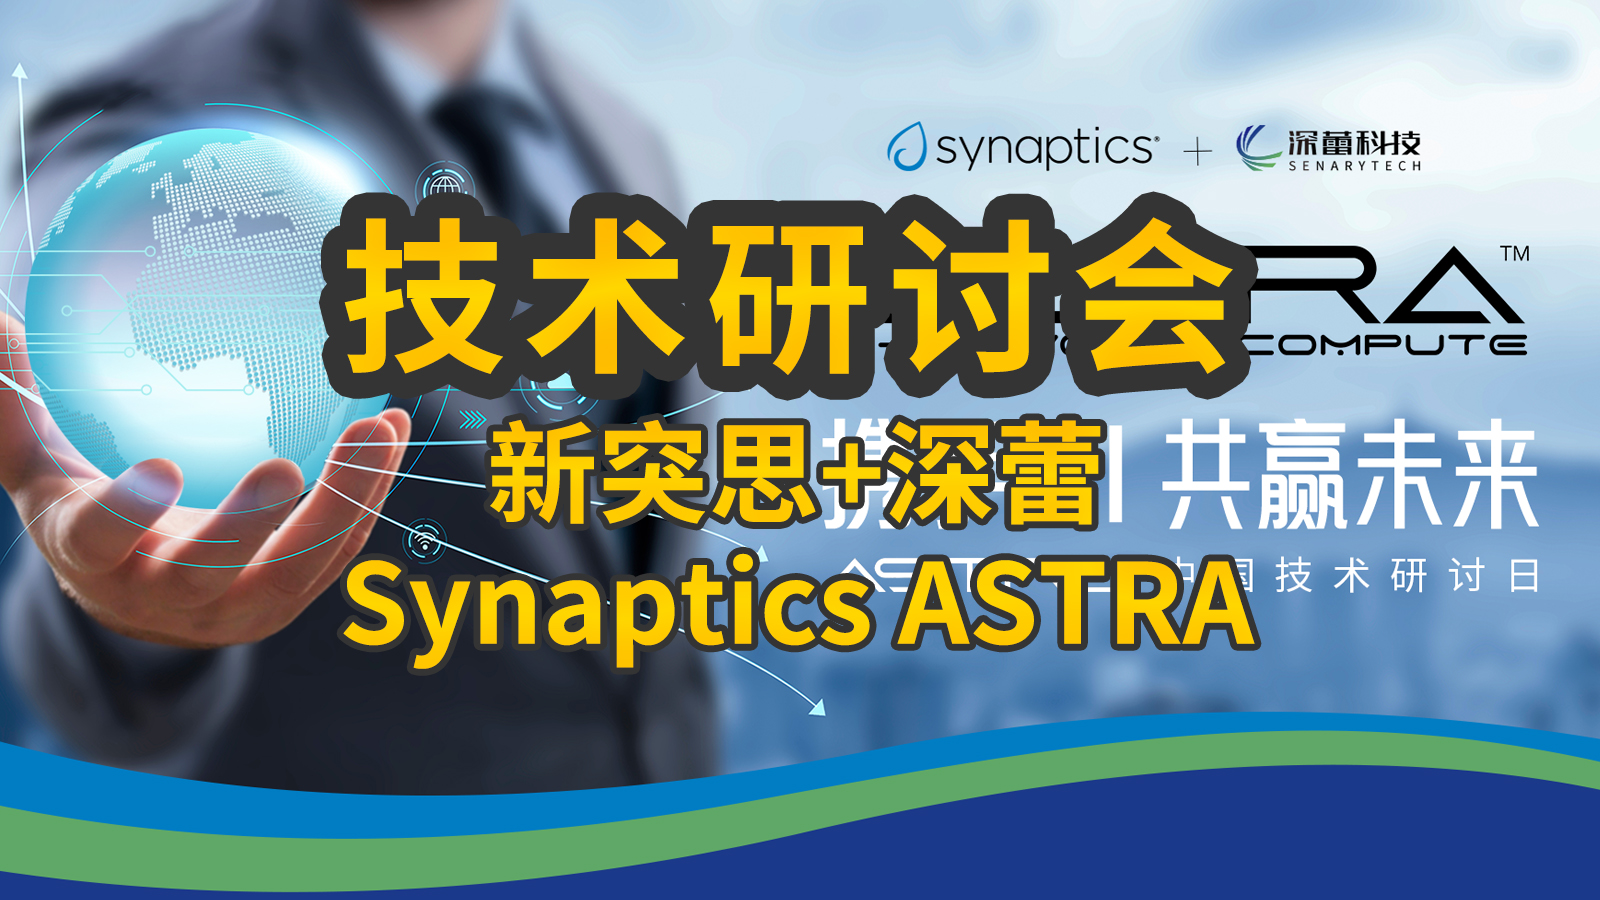 2024年6月12日深蕾科技攜手Synaptics舉辦Astra中國技術研討會
本次活動主題：攜手AI，共贏未